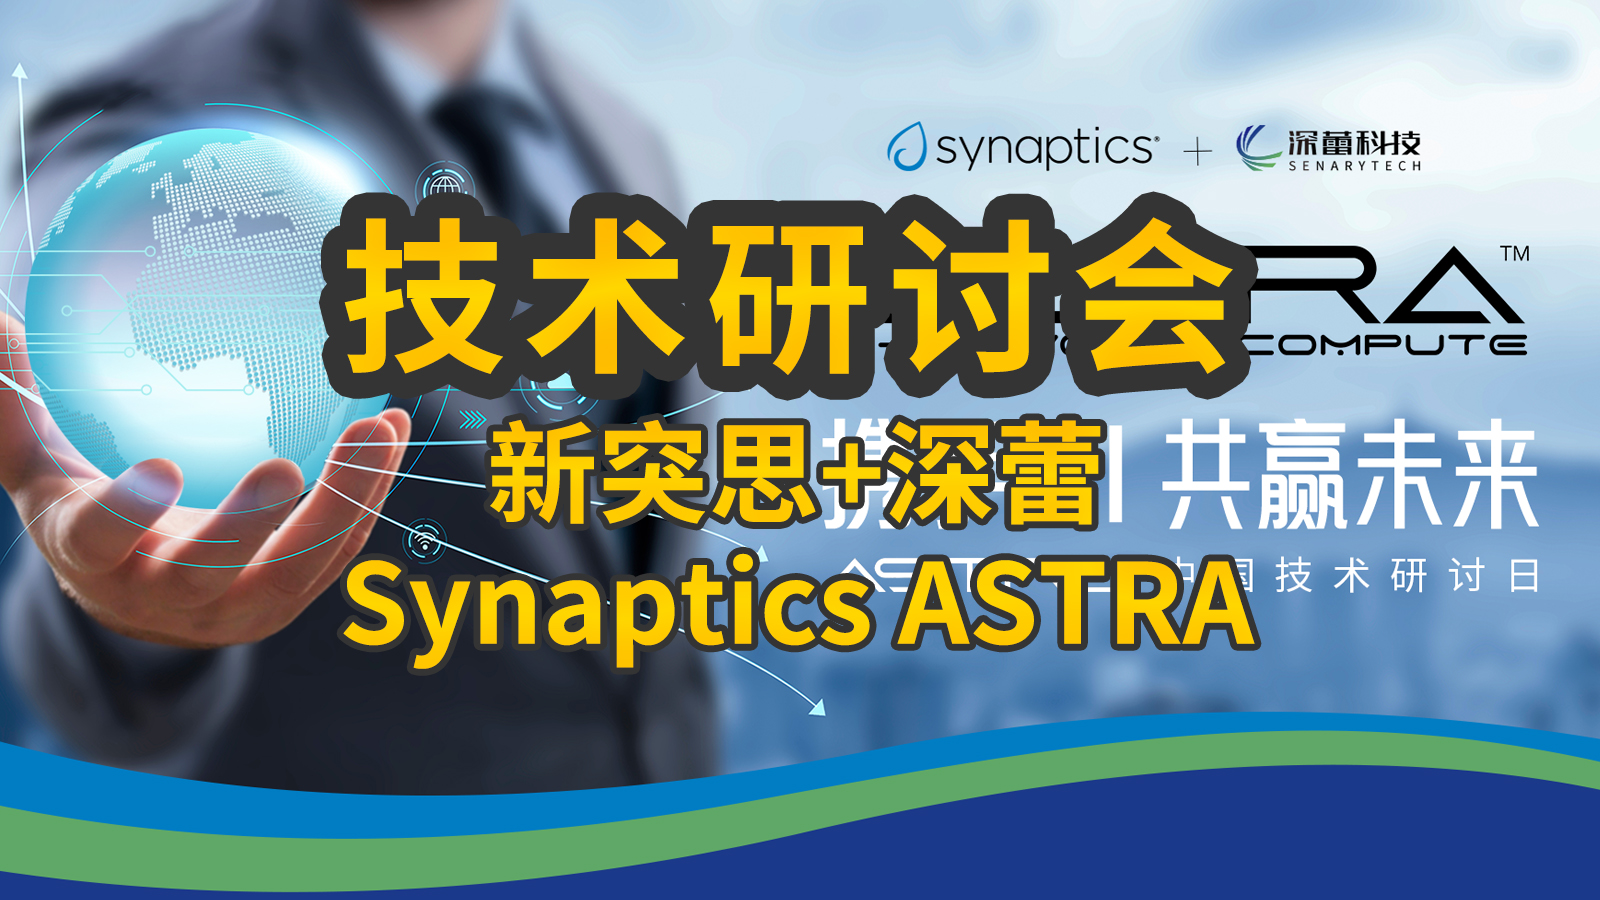 2024年6月12日深蕾科技攜手Synaptics舉辦Astra中國技術研討會
本次活動主題：攜手AI，共贏未